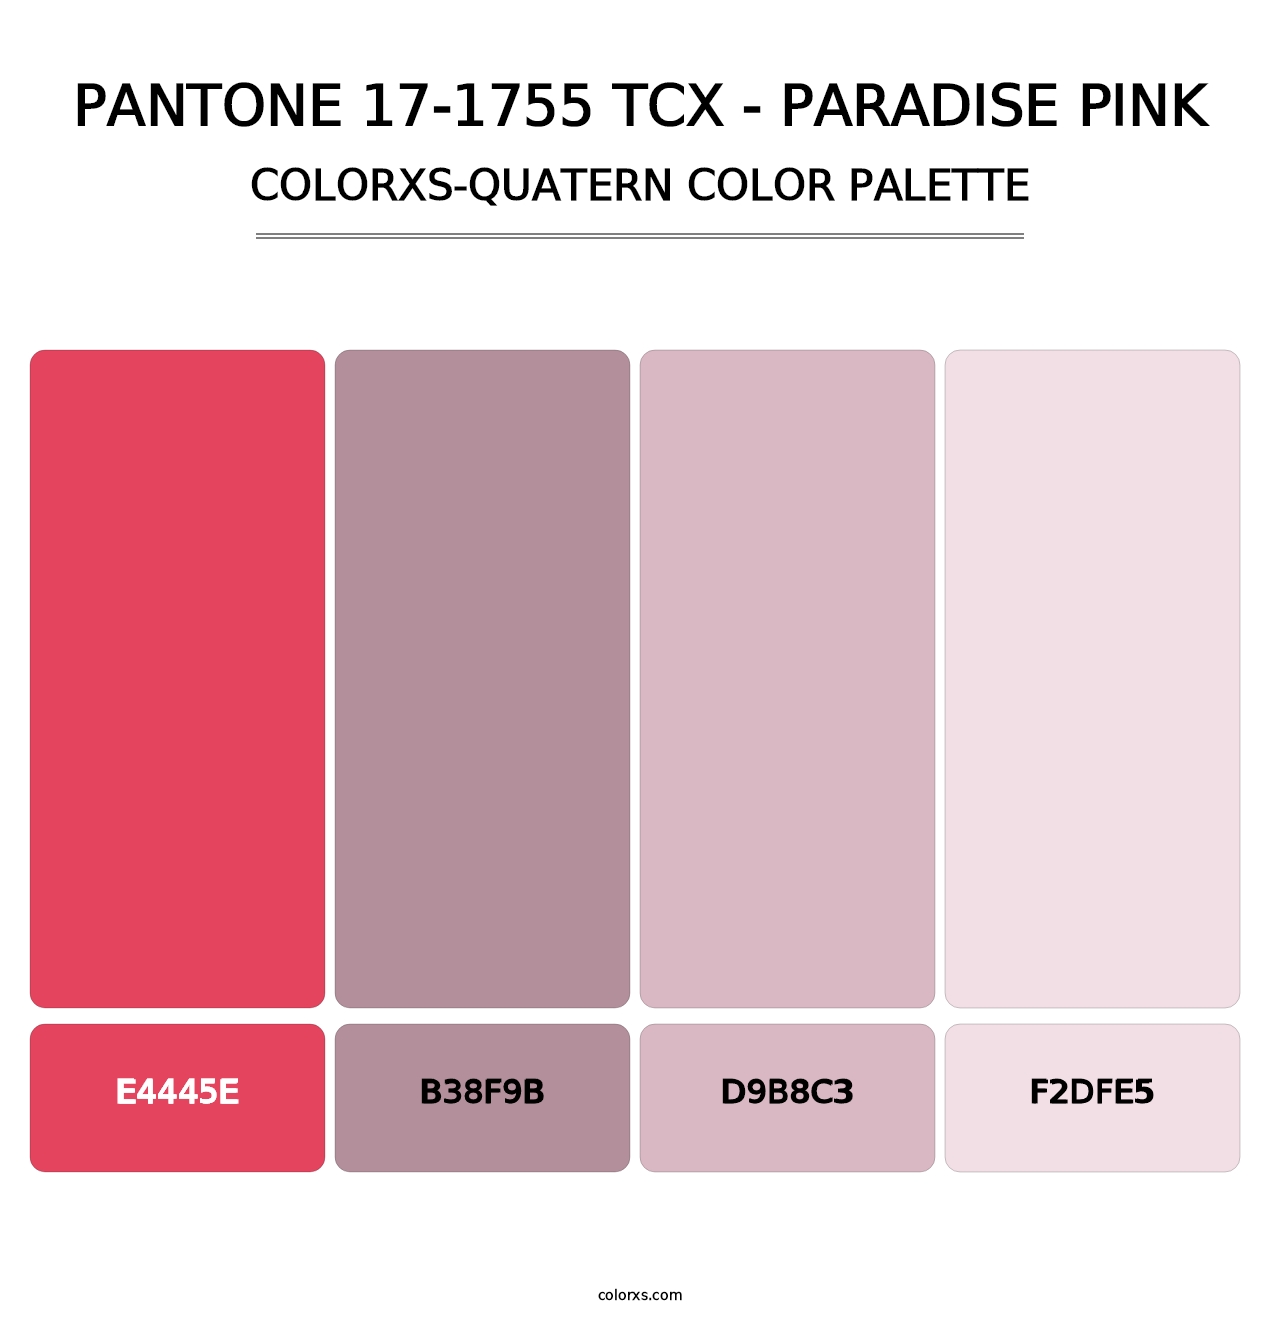 PANTONE 17-1755 TCX - Paradise Pink - Colorxs Quatern Palette